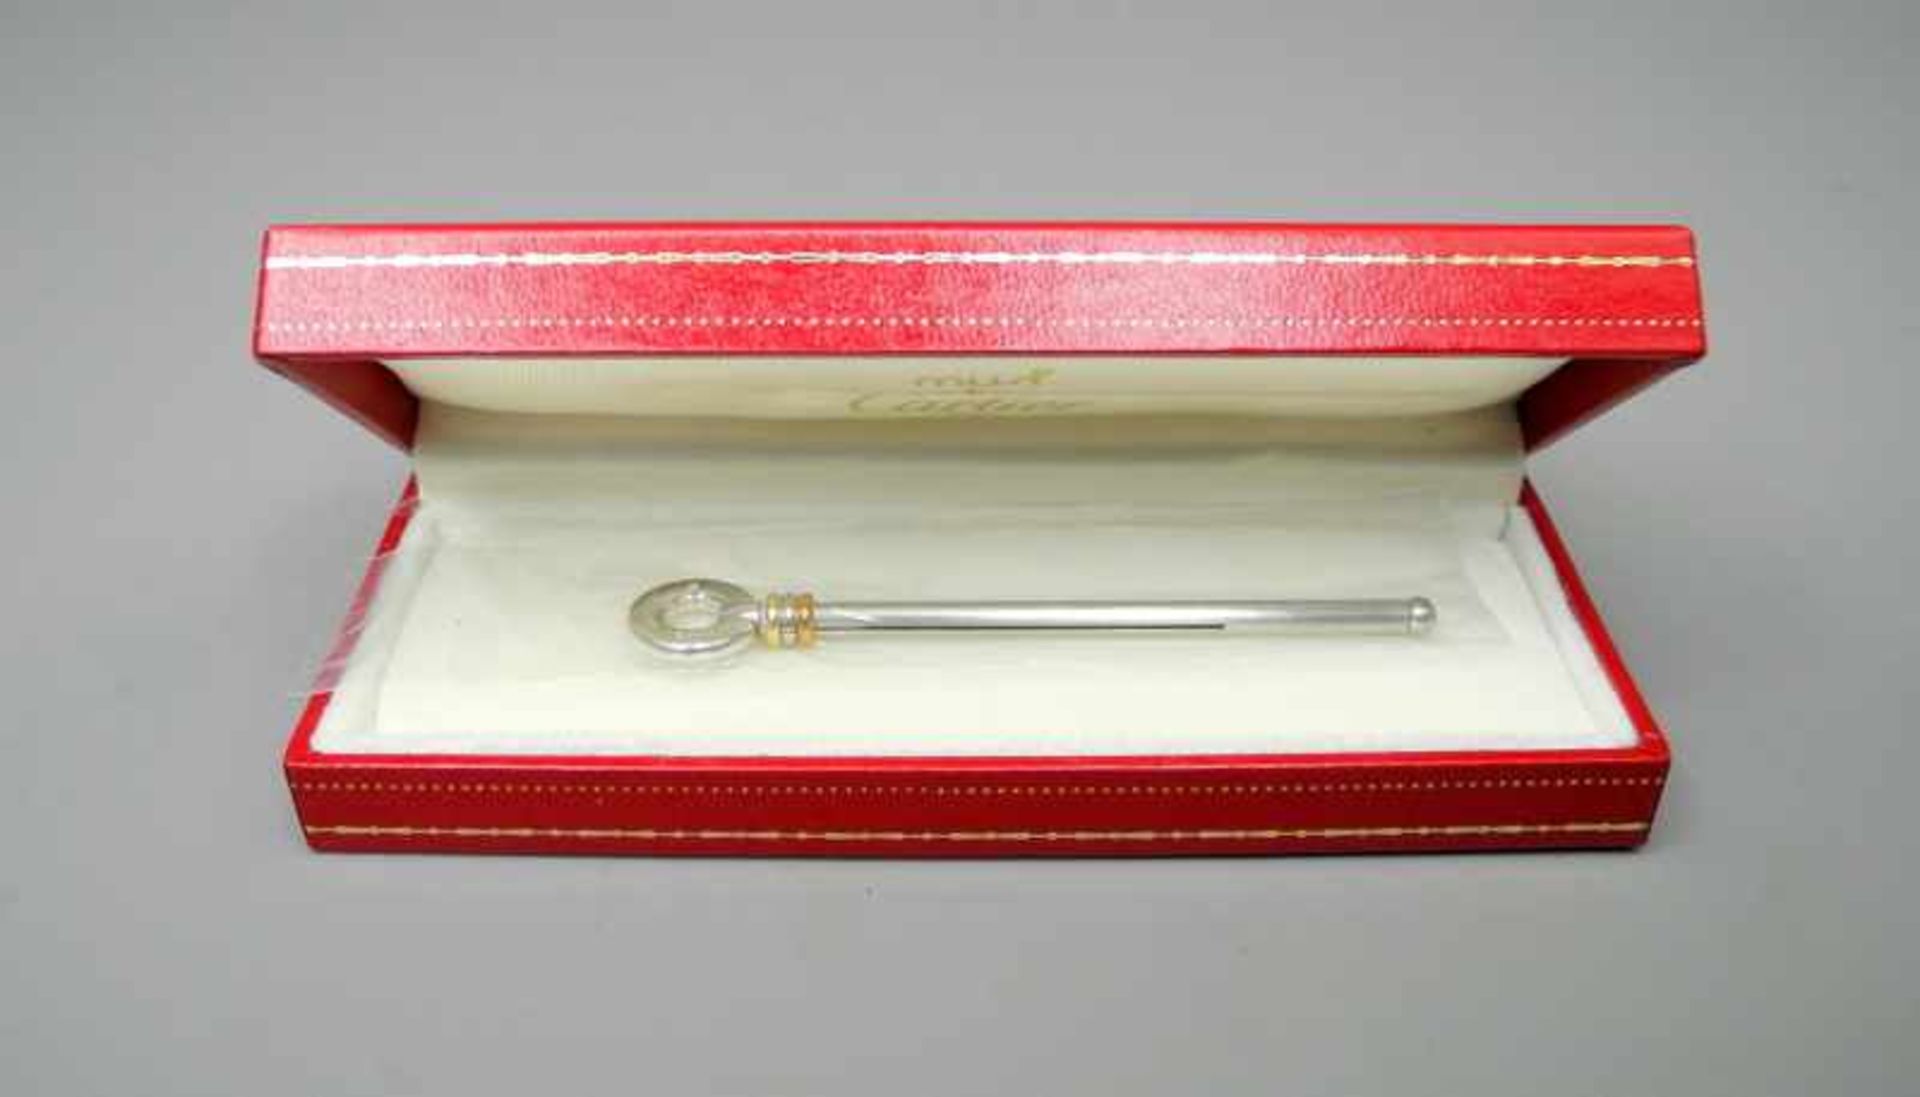 Cartier, SektquirlSilber plated, am Griff signiert, "must de Cartier" bezeichnet und 1989 datiert.